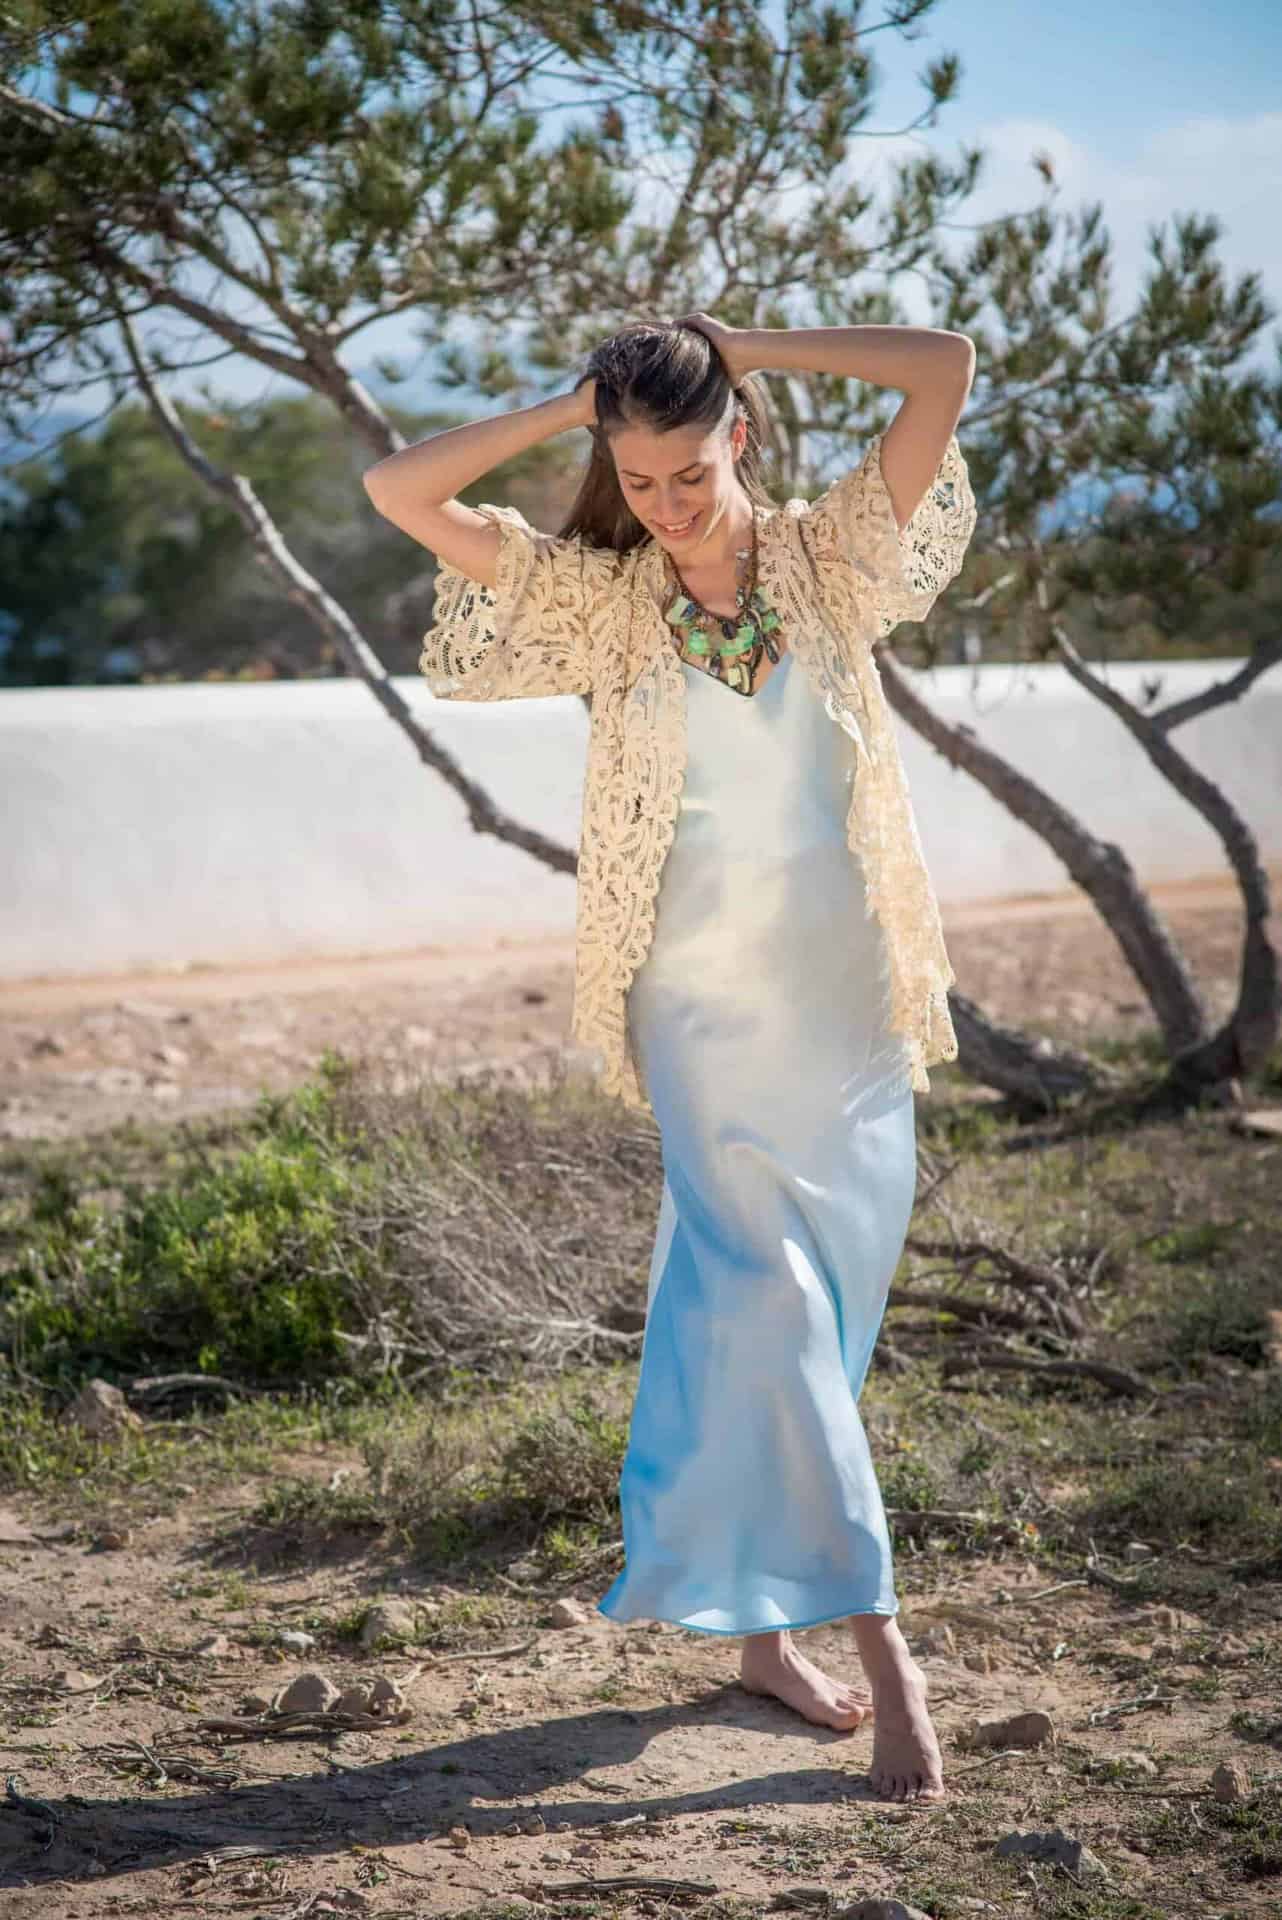 Silk Slip Dress La Galeria Elefante Ibiza Victoria Made With Love & Laughter